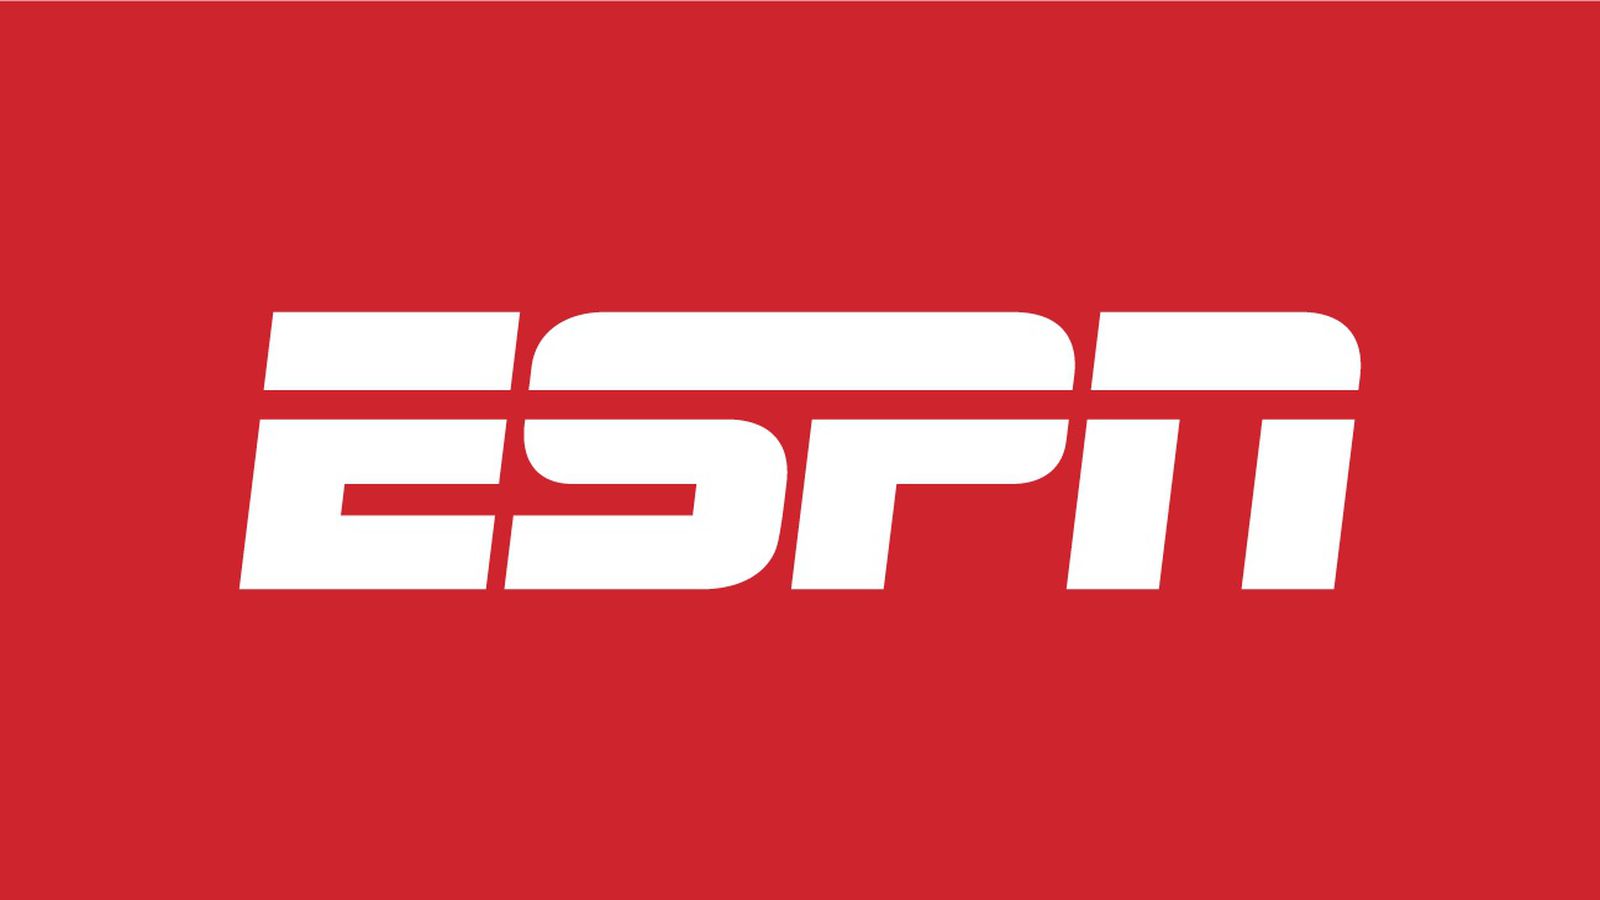 Según informes, Apple sería un socio ideal para distribuir ESPN, pero es poco probable que se concrete un acuerdo.